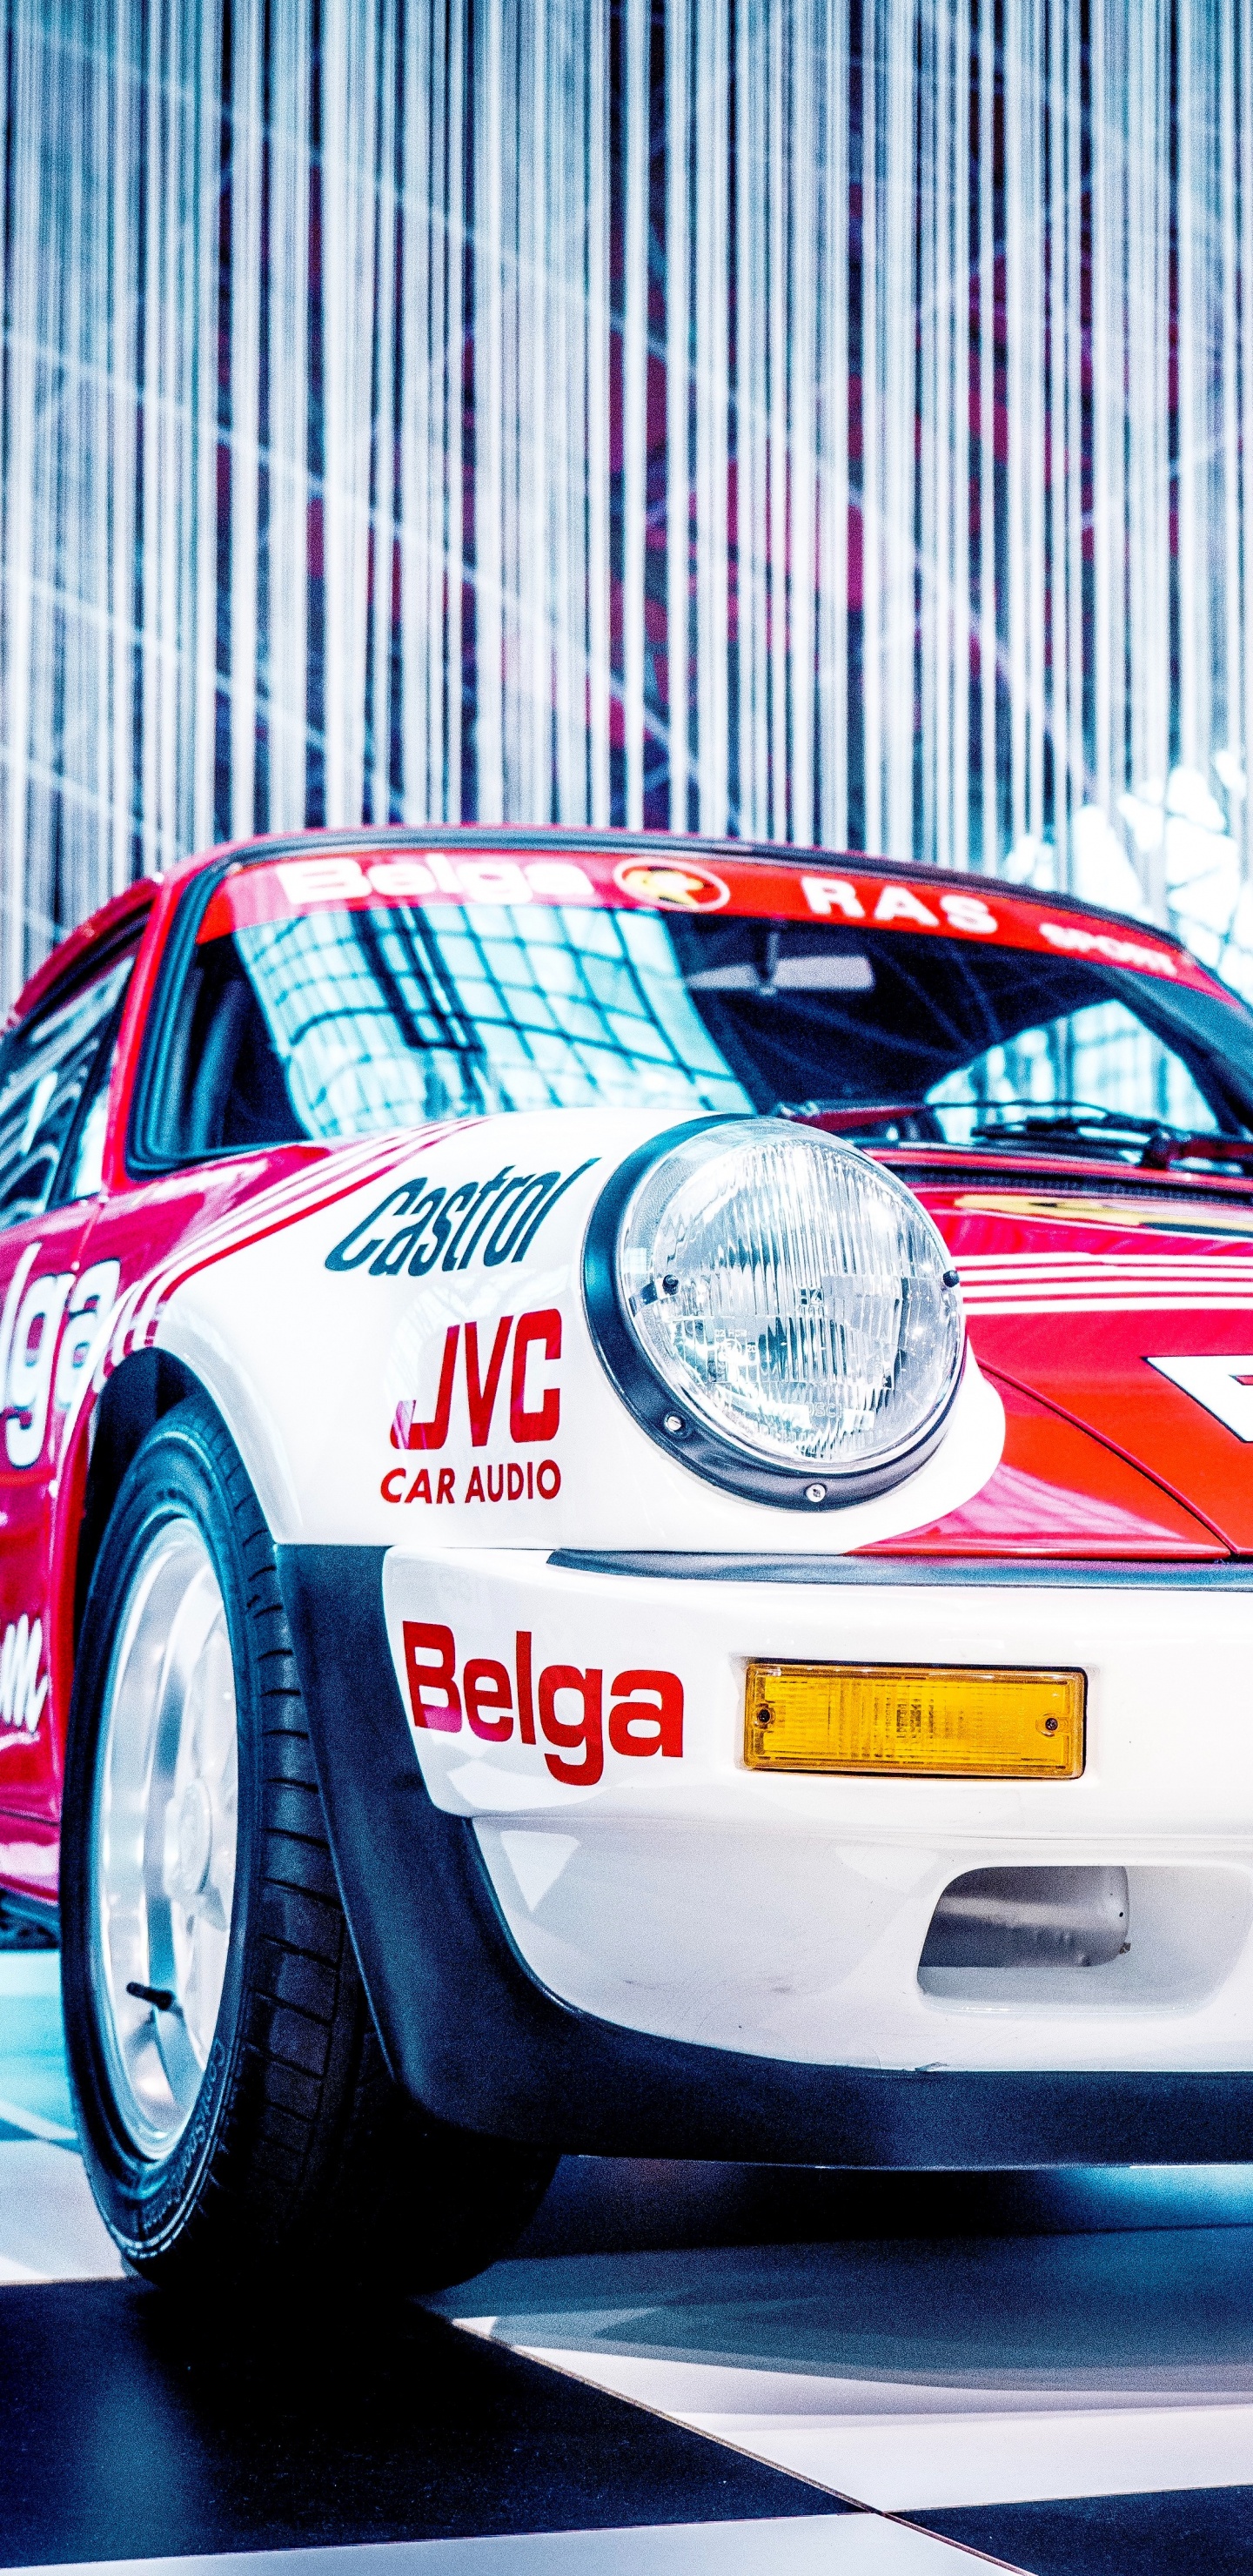 Porsche 911 Blanche et Rouge. Wallpaper in 1440x2960 Resolution